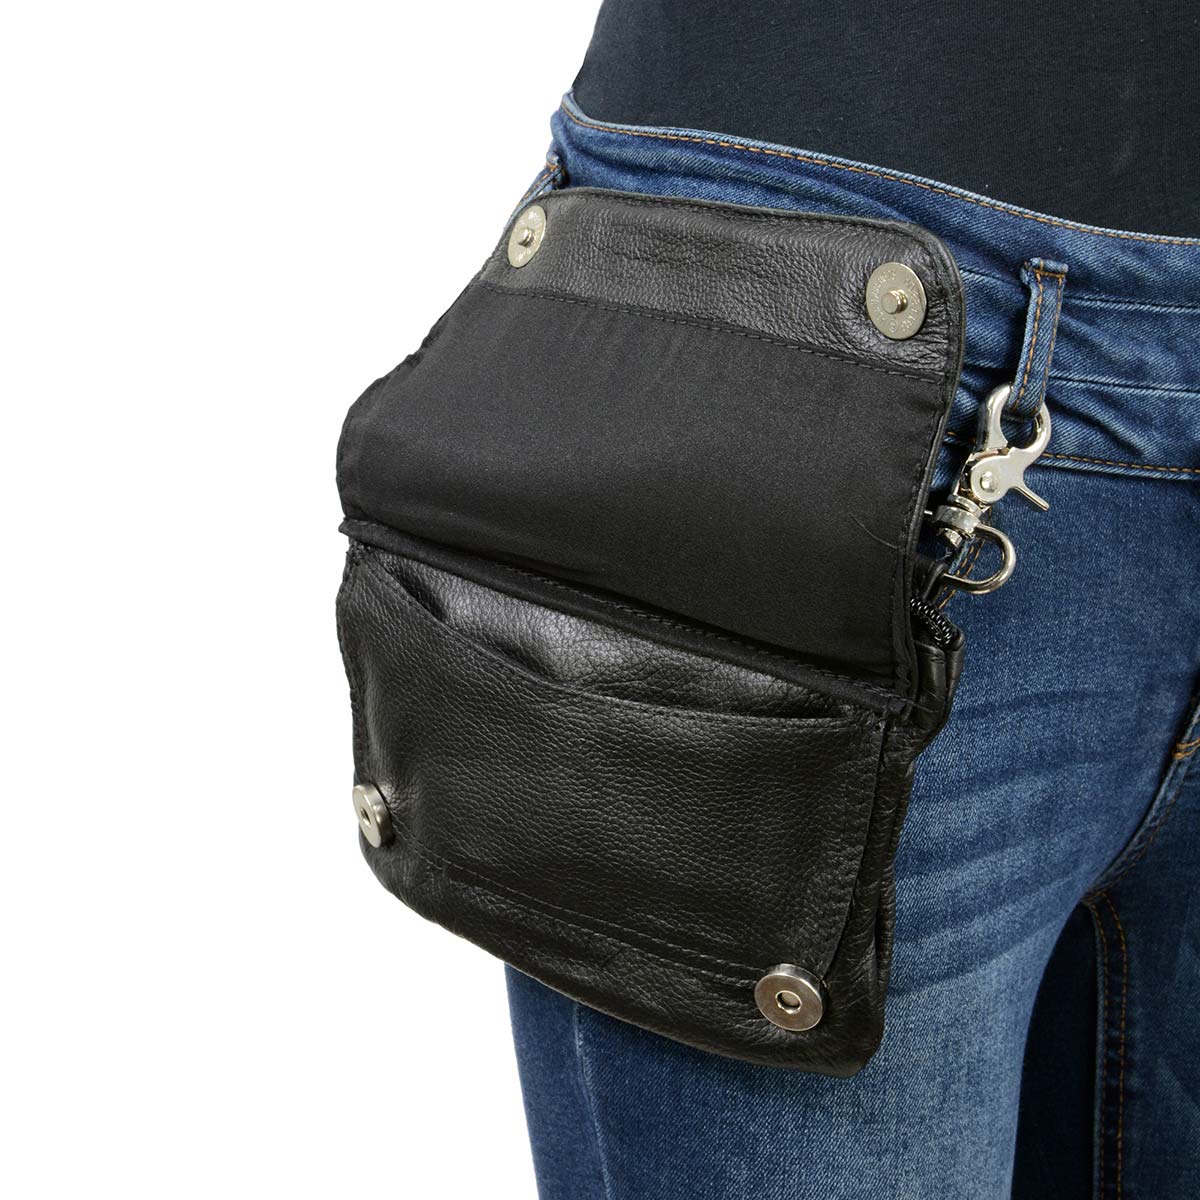 Leather Hip Belt Bag